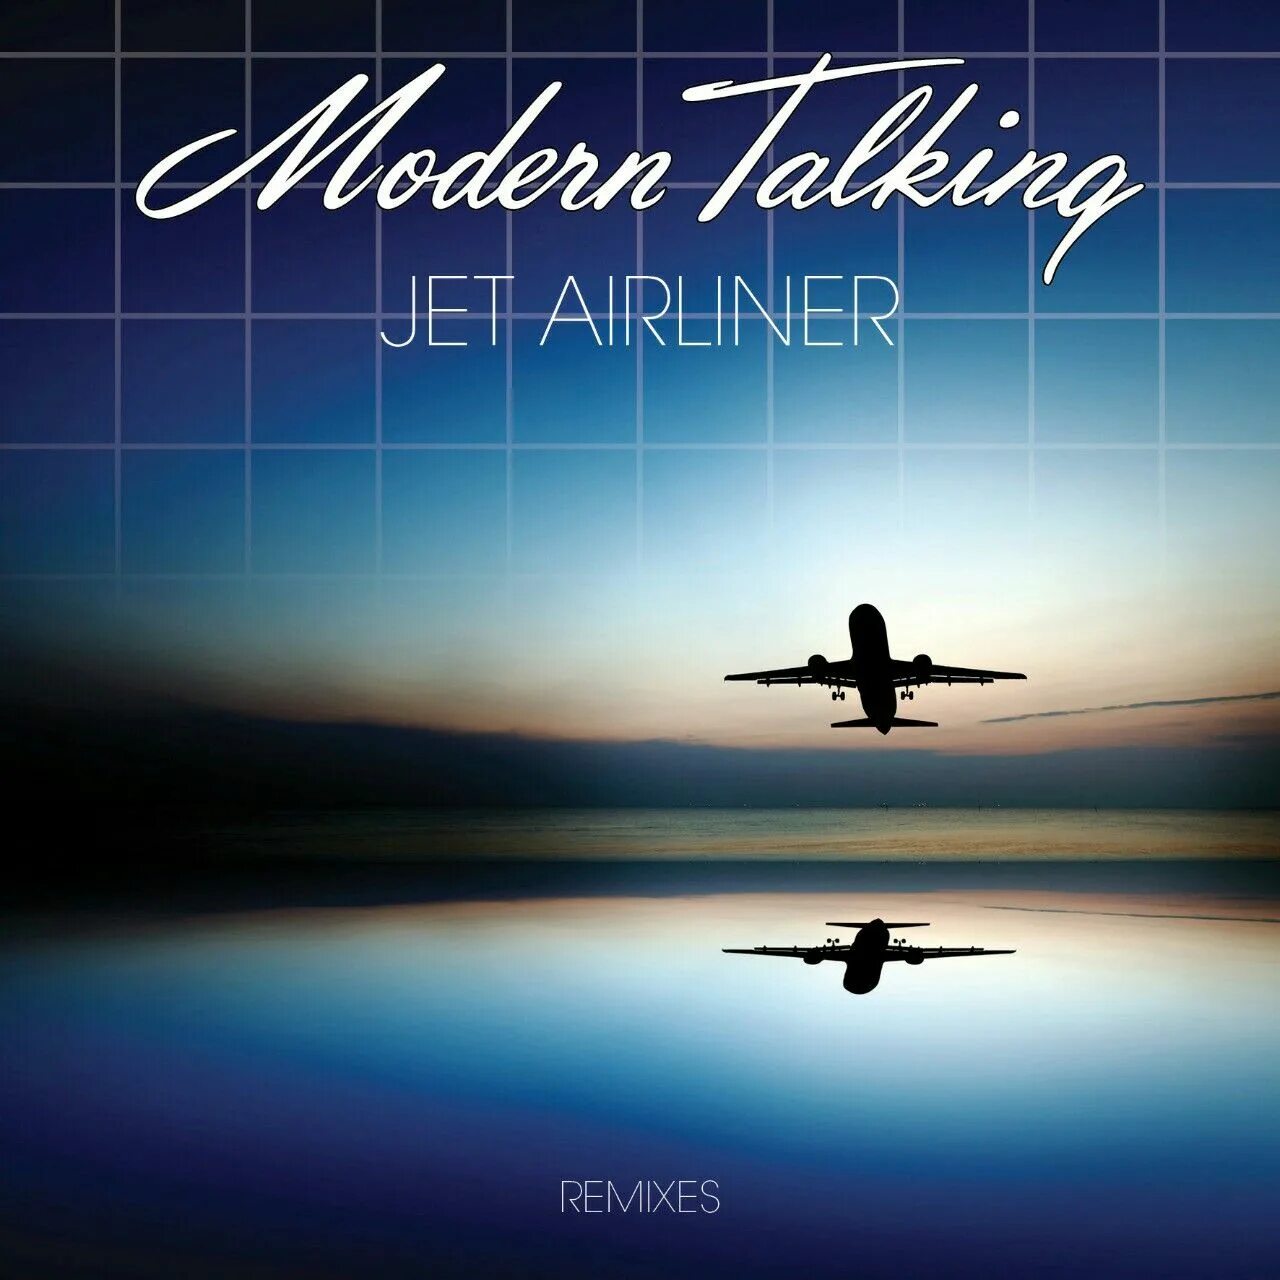 Modern talking Jet airliner. Самолёты Modern talking. Modern talking Jet airliner обложка. Jet talks